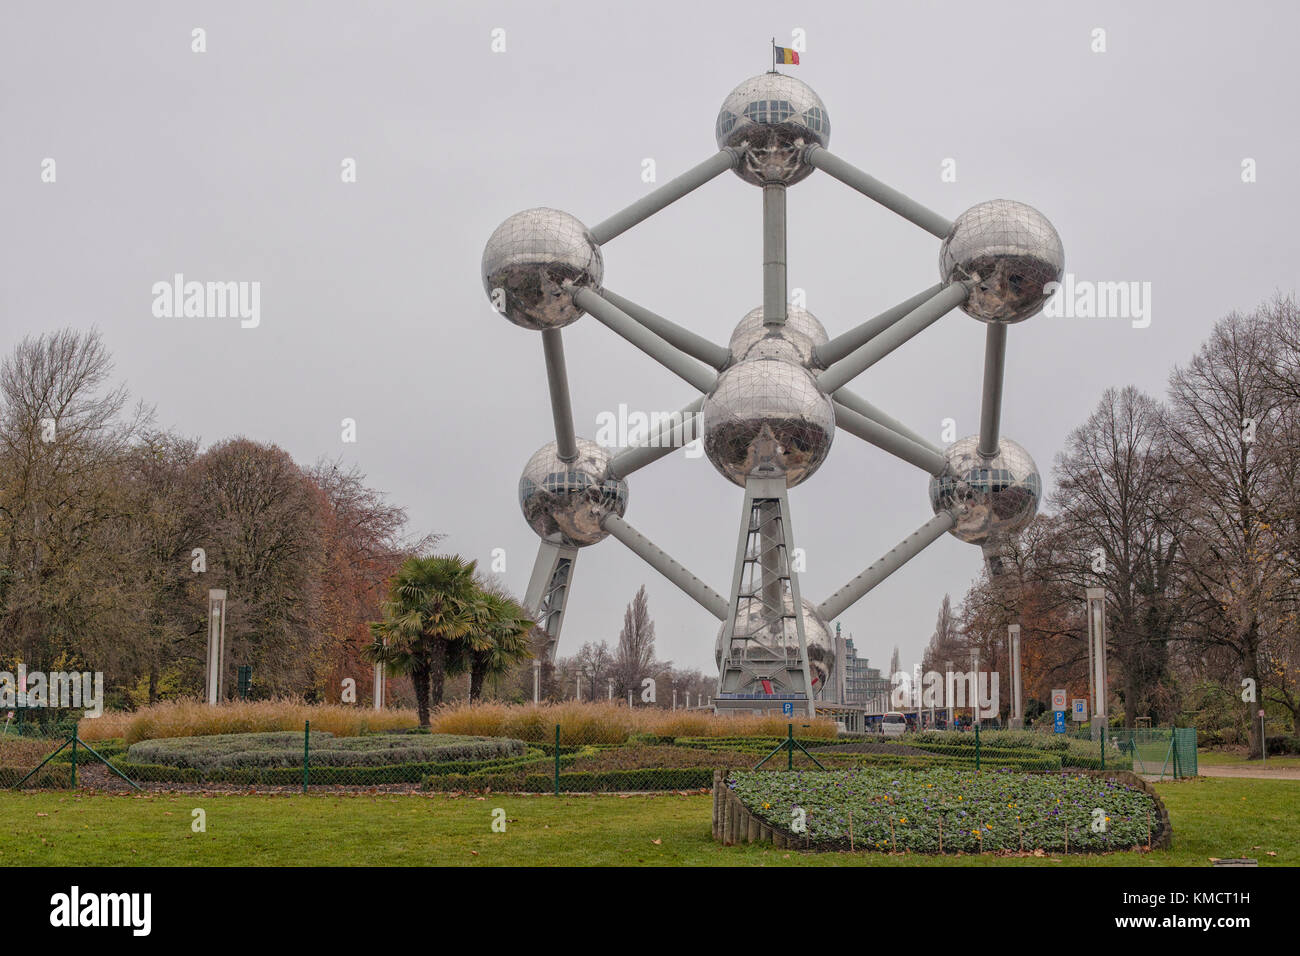 Bruxelles, Belgique- dec 7 structure : l'Atomium à Bruxelles, Belgique le 7 décembre 2014. l'atomium est un grand bâtiment de 102 m, construit initialement pour exp Banque D'Images